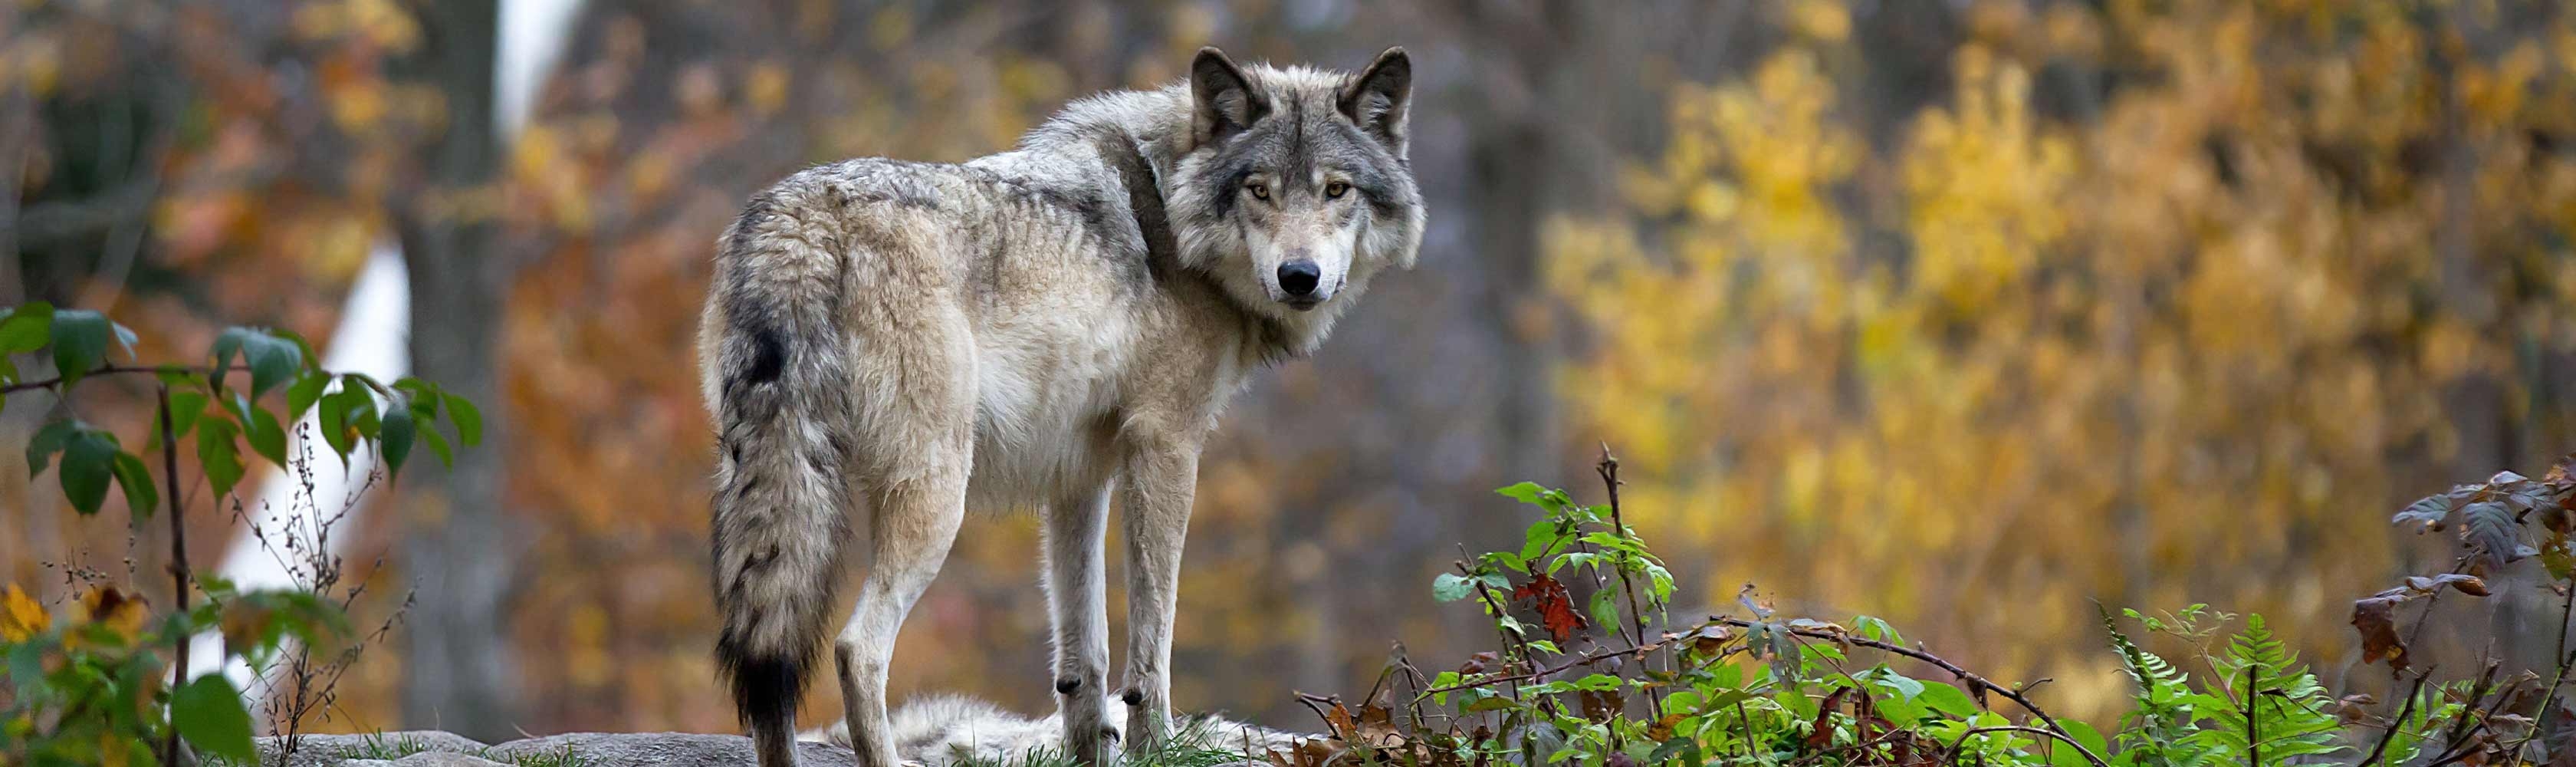 Wolf in natürlicher Umgebung eines Wildtierparks